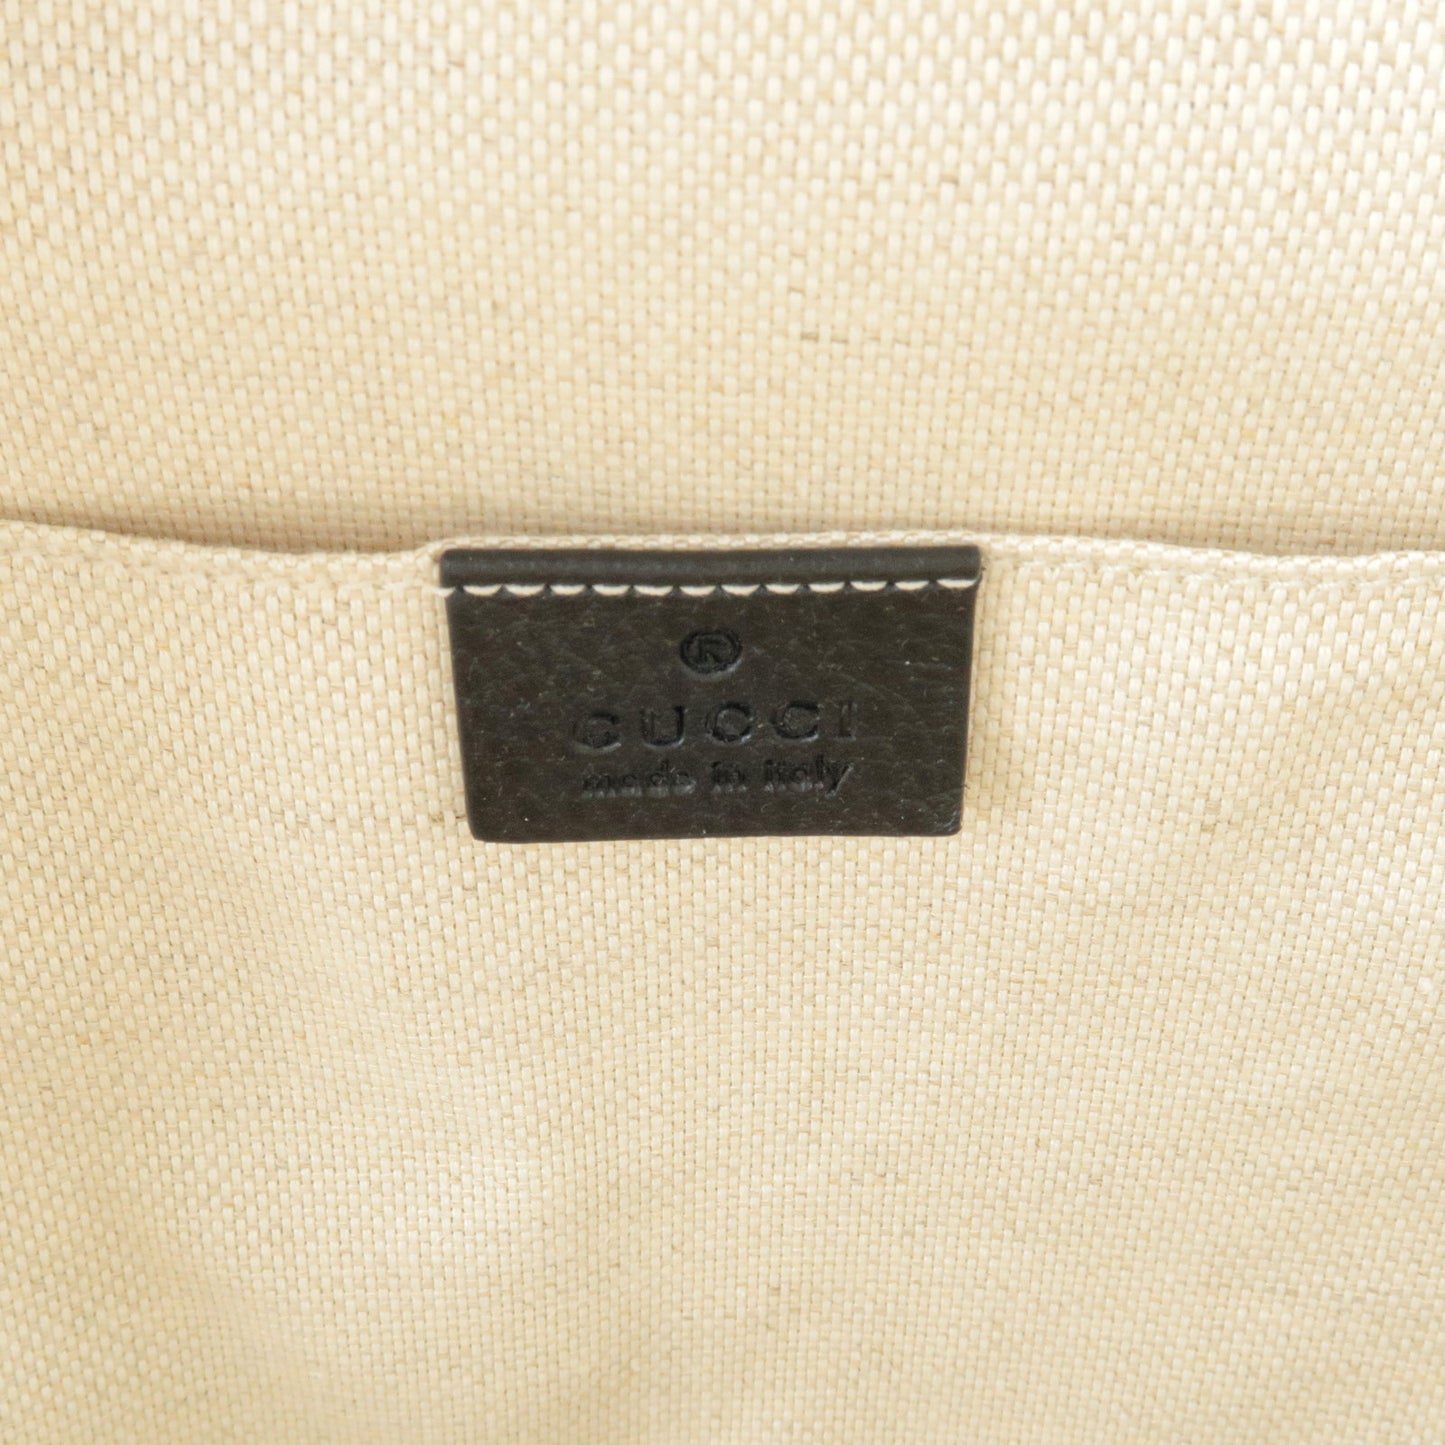 GUCCI SOHO Interlocking G Leather Back Pack Black 536192